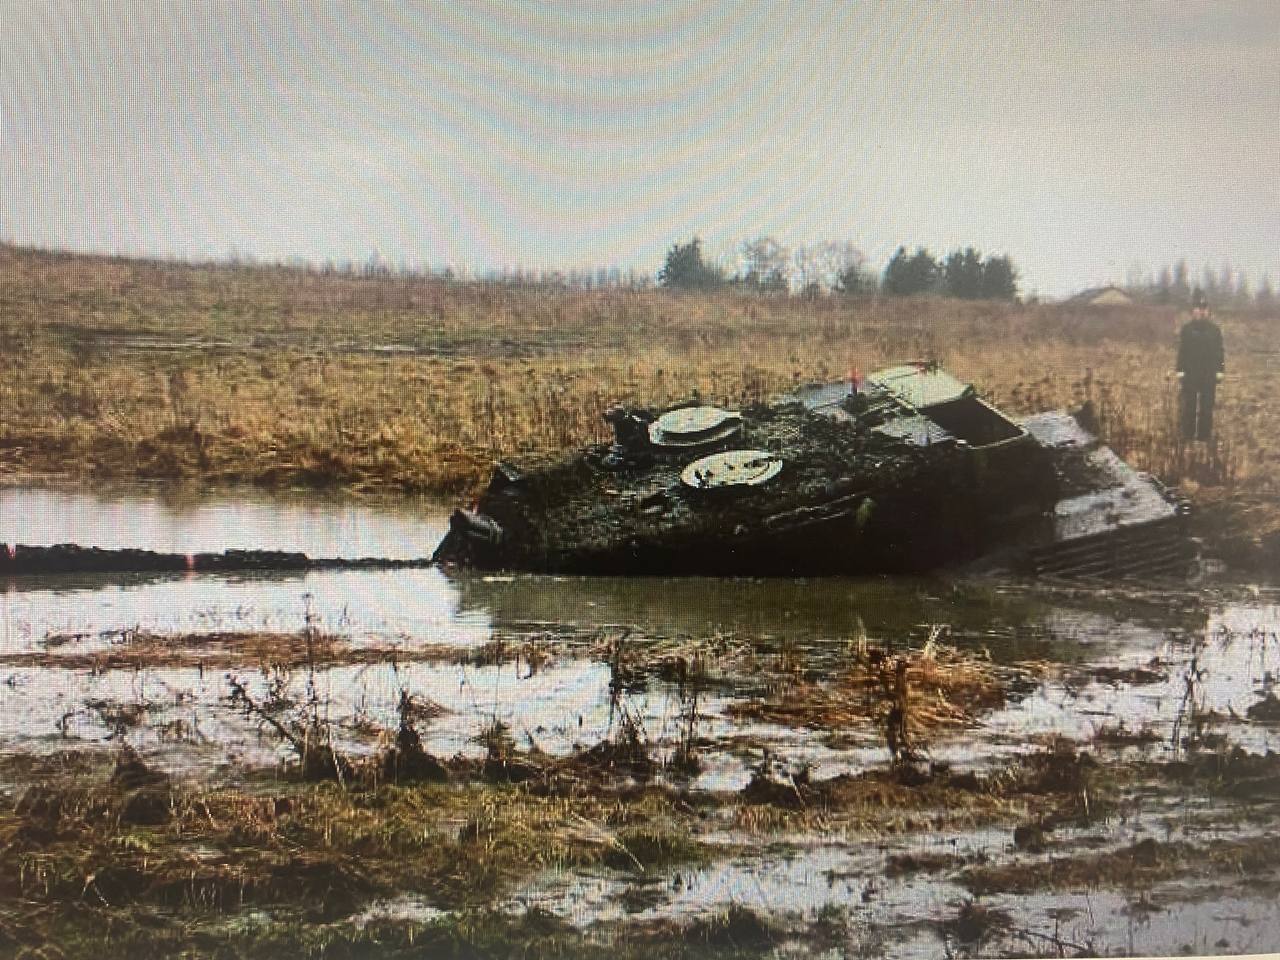 Оккупанты похвастались захватом танка Leopard с ''польскими наемниками'' и феерически опозорились. Фото